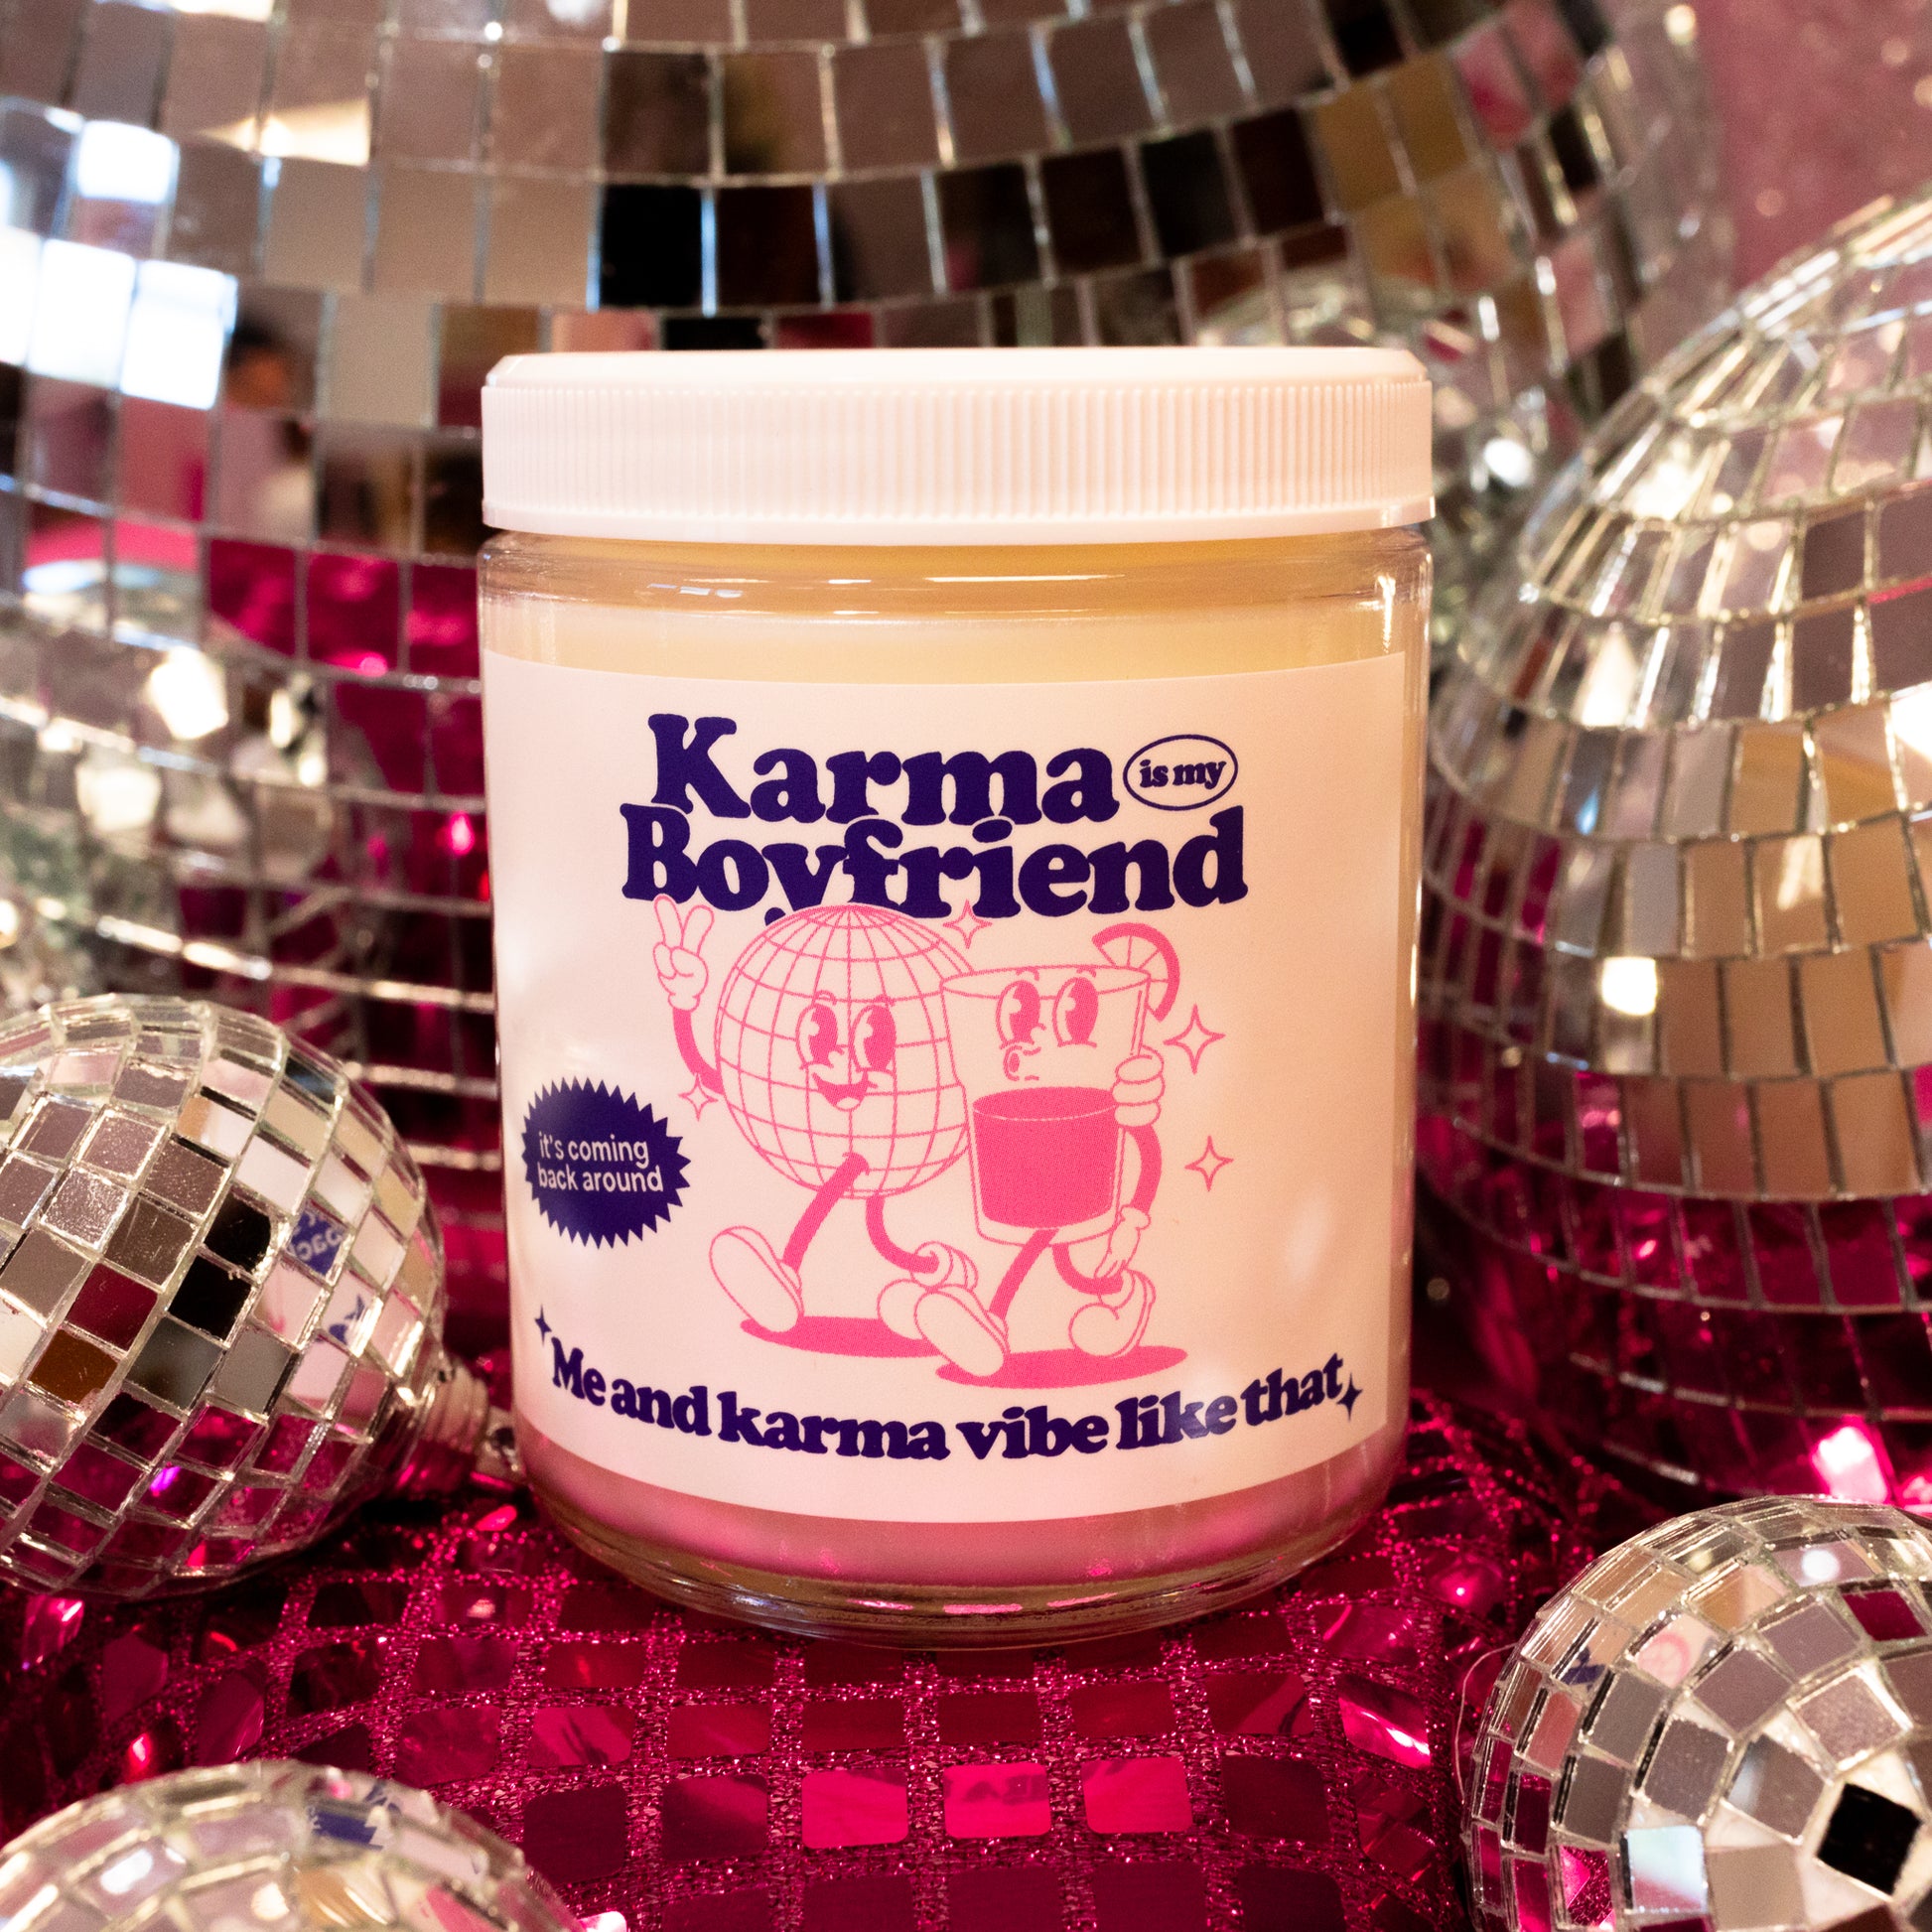 karma is my boyfriend jar candle